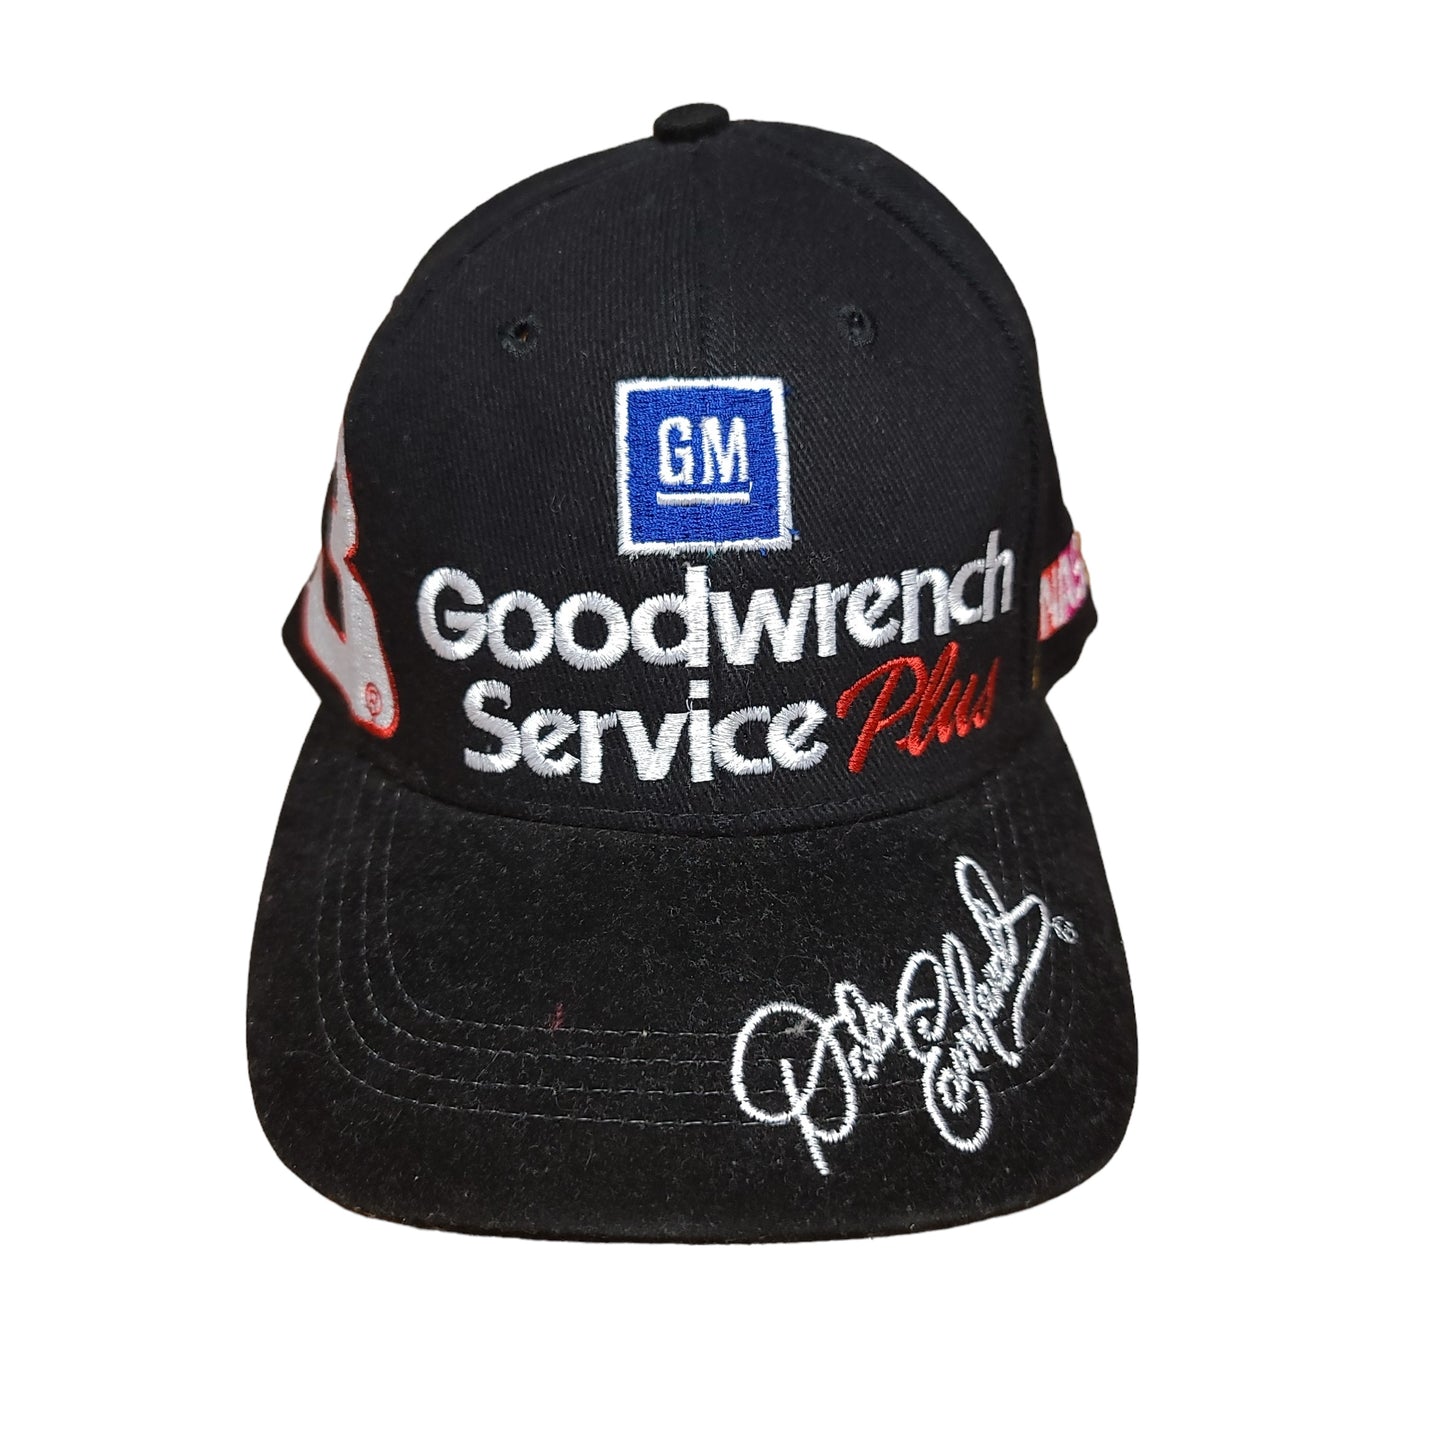 Vintage Dale Earnhardt Nascar Racing Black Strap Back Hat